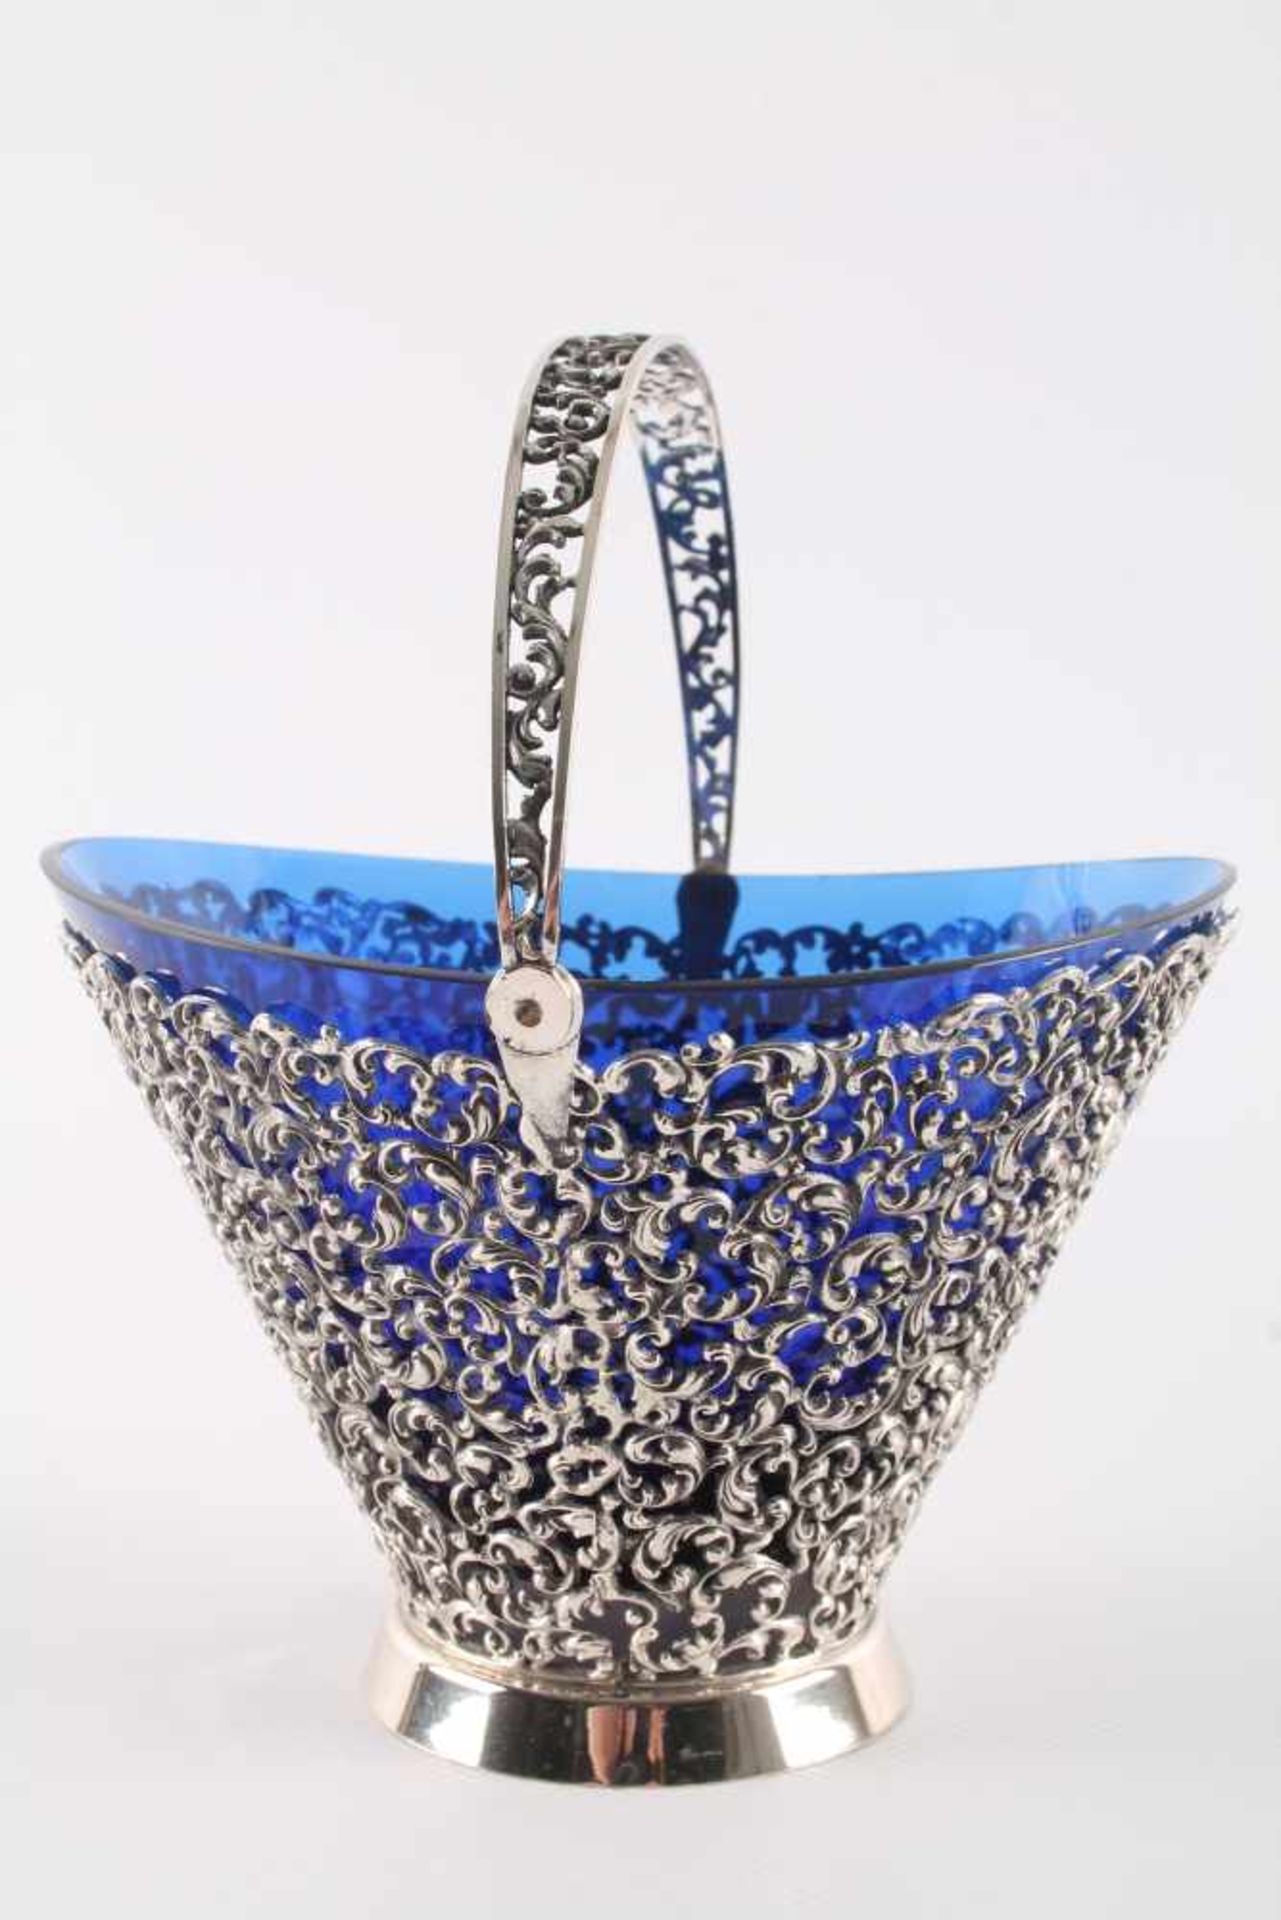 835 Silber - große Zuckerschale mit kobaltblauem Glaseinsatz und Zuckerlöffel, silver sugar bowl - Image 2 of 6